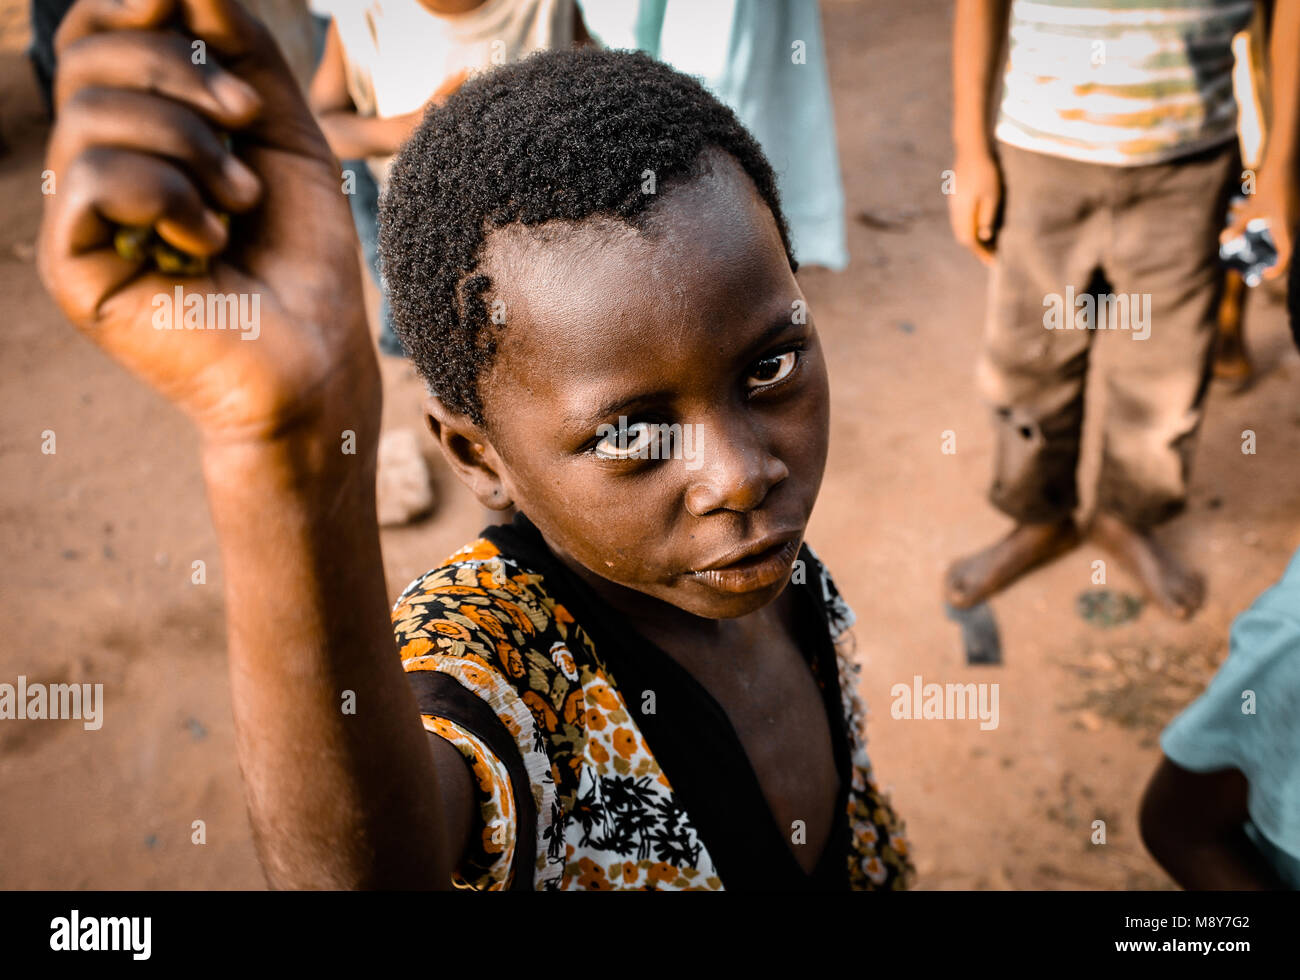 Un niño de color Africana pide ayuda como se retrata fijamente mirando a la lente de la cámara, en una aldea cerca de Watamu, Kenya, Africa. Foto de stock